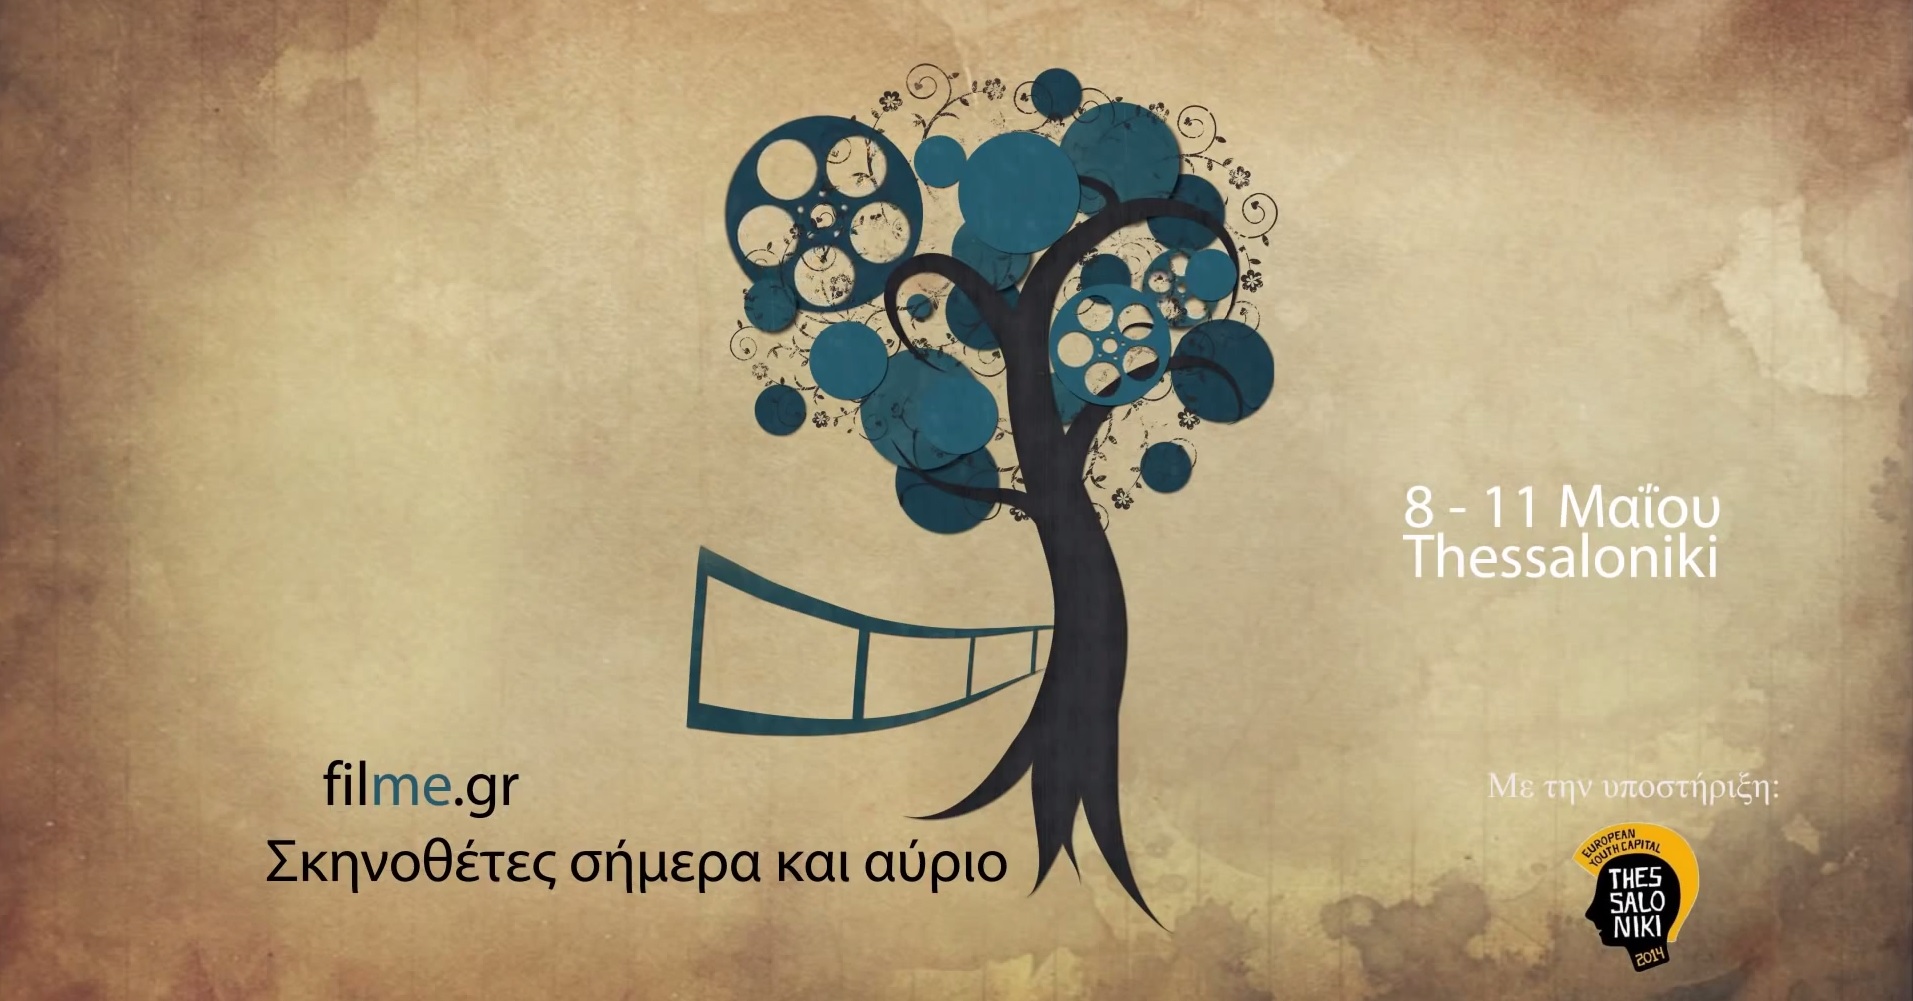 FILME 2014: Πανευρωπαϊκό Φεστιβάλ ταινιών μικρού μήκους στο Θέατρο ΚΟΛΟΣΣΑΙΟΝ